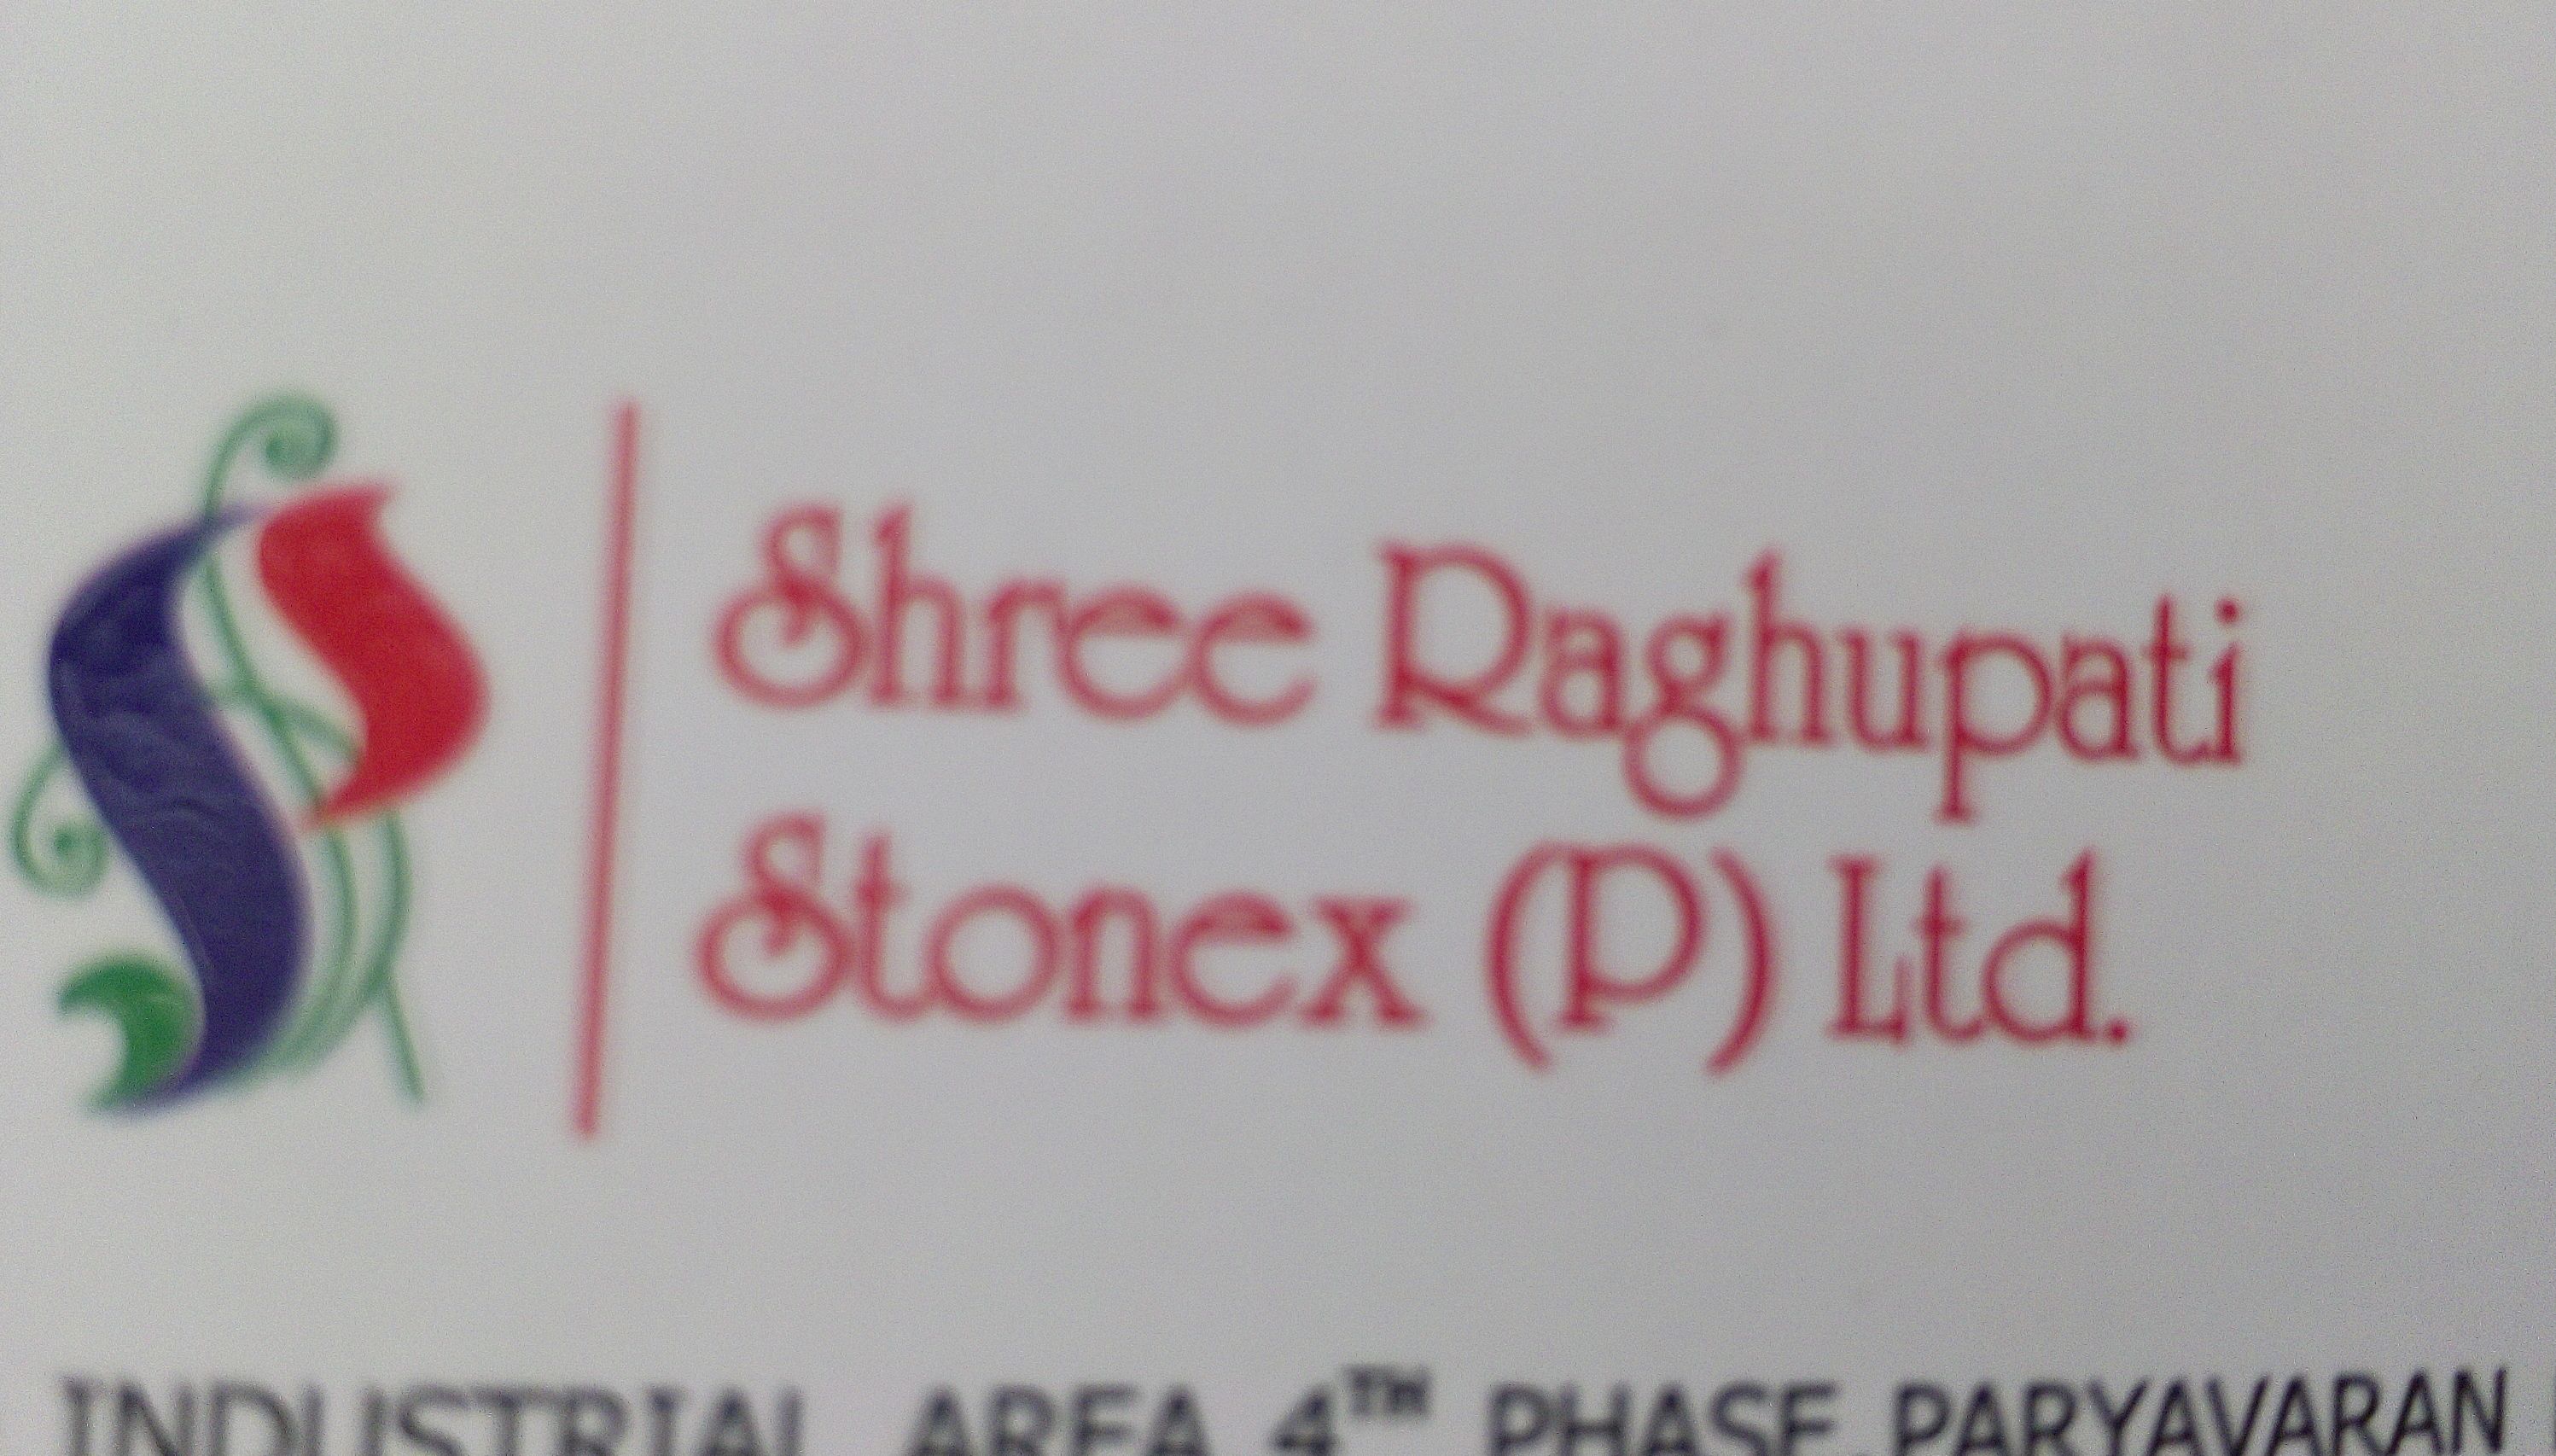 Shree Raghupati Stonex Pvt. Ltd